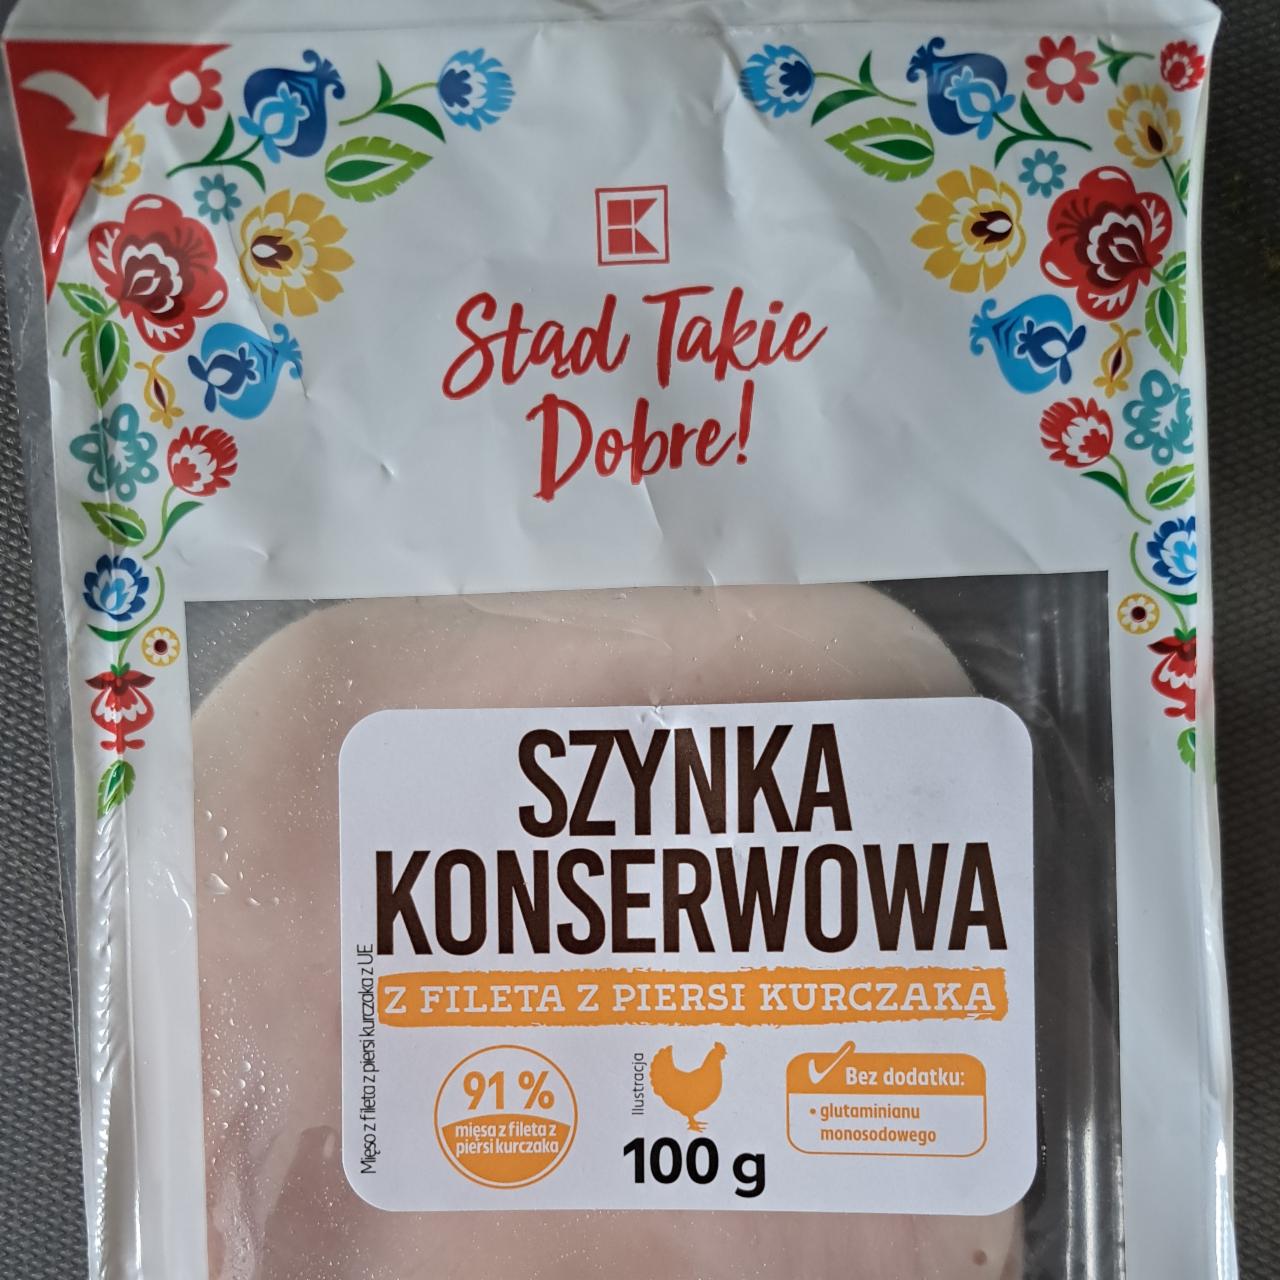 Zdjęcia - Szynka konserwowa z fileta z piersi kurczaka K-Stąd Takie Dobre!